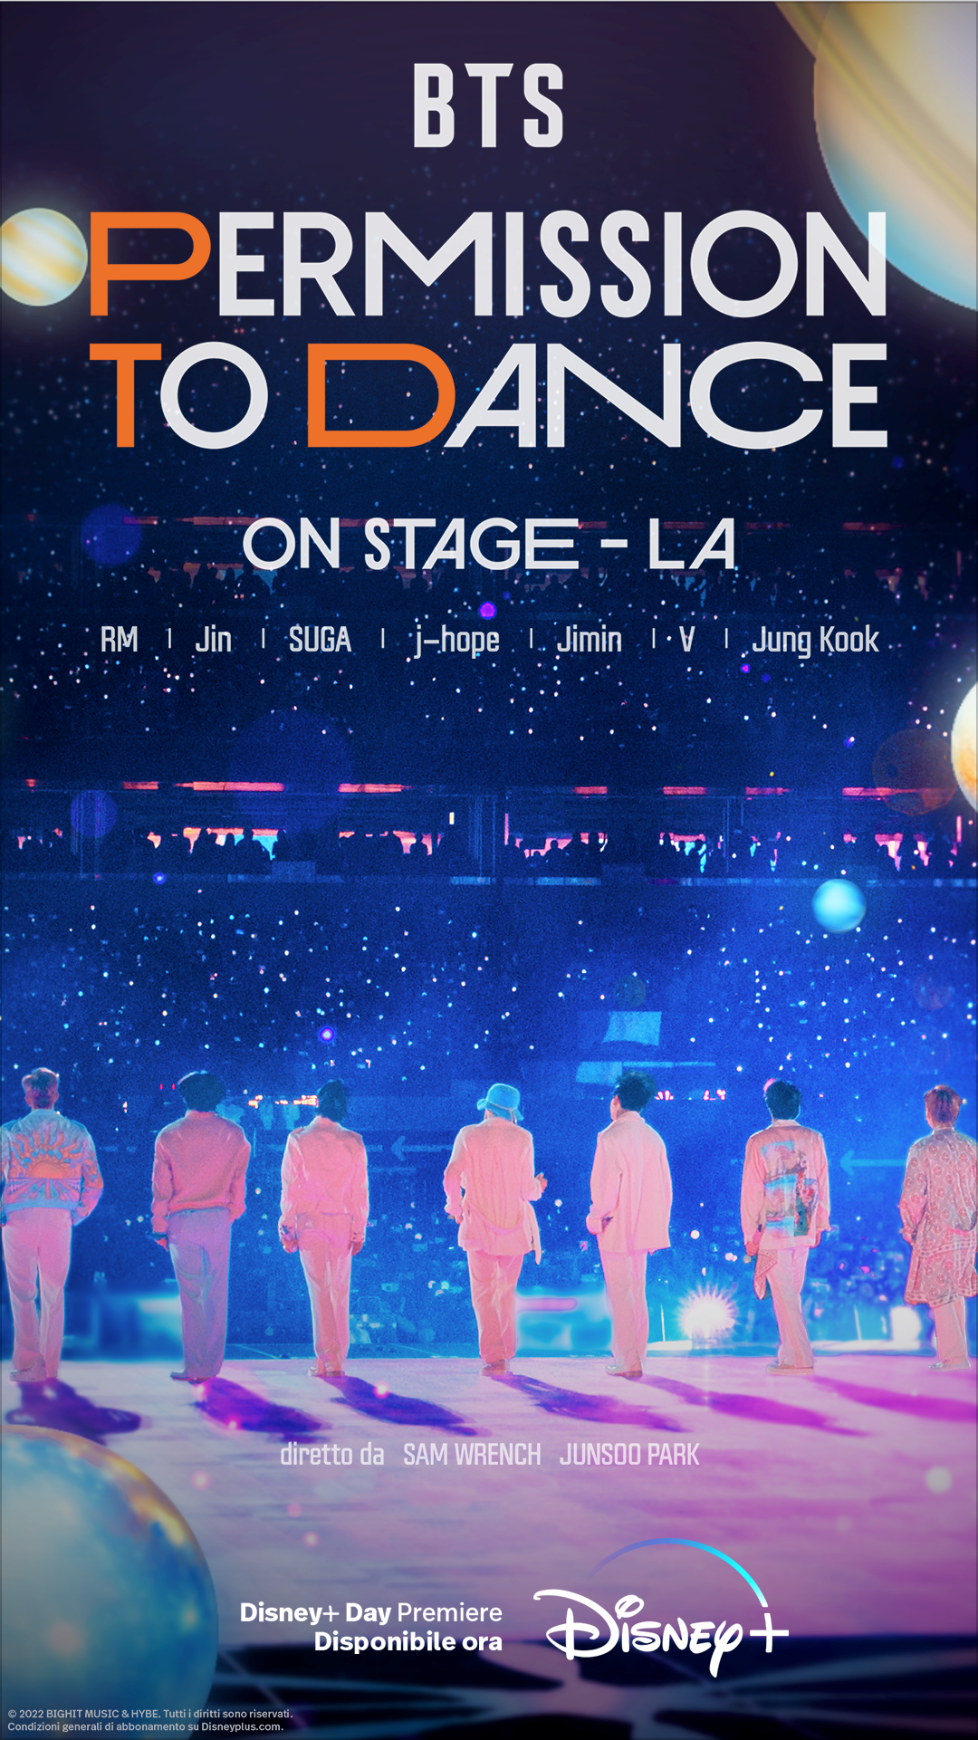 BTS – Permission to dance on stage – LA